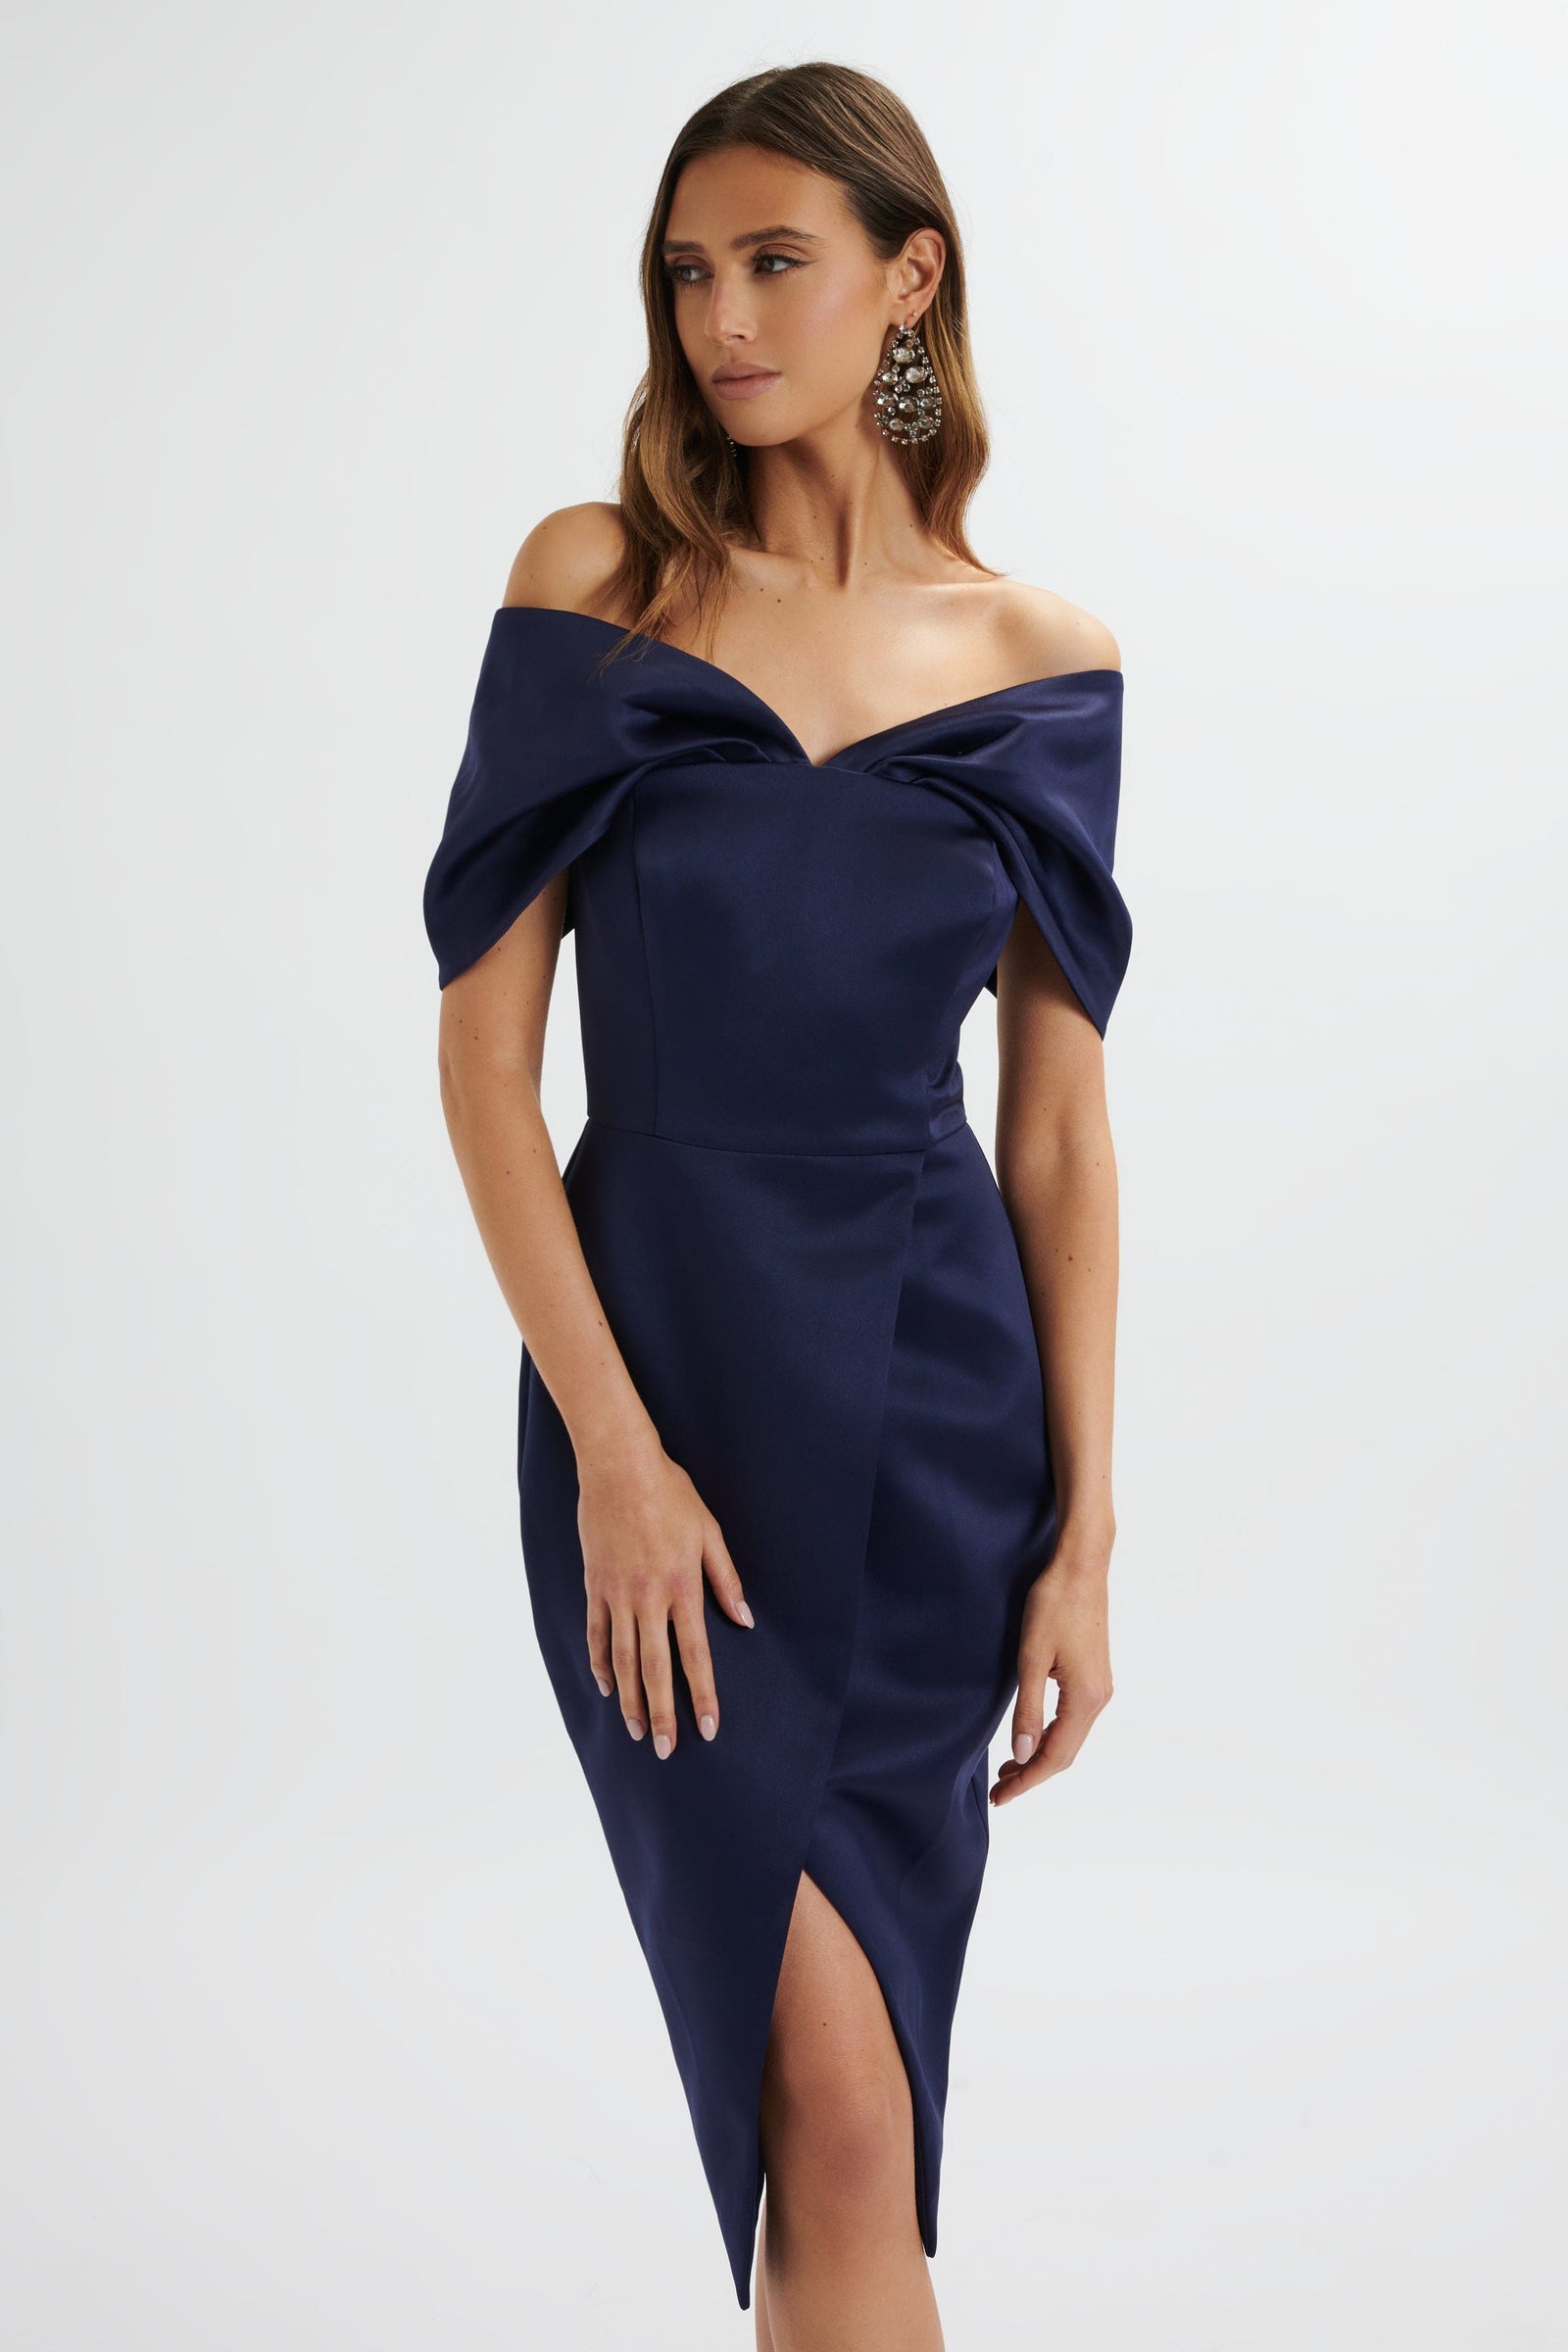 Midi Dresses | Elegant Mid-Length Dresses for Women | UK